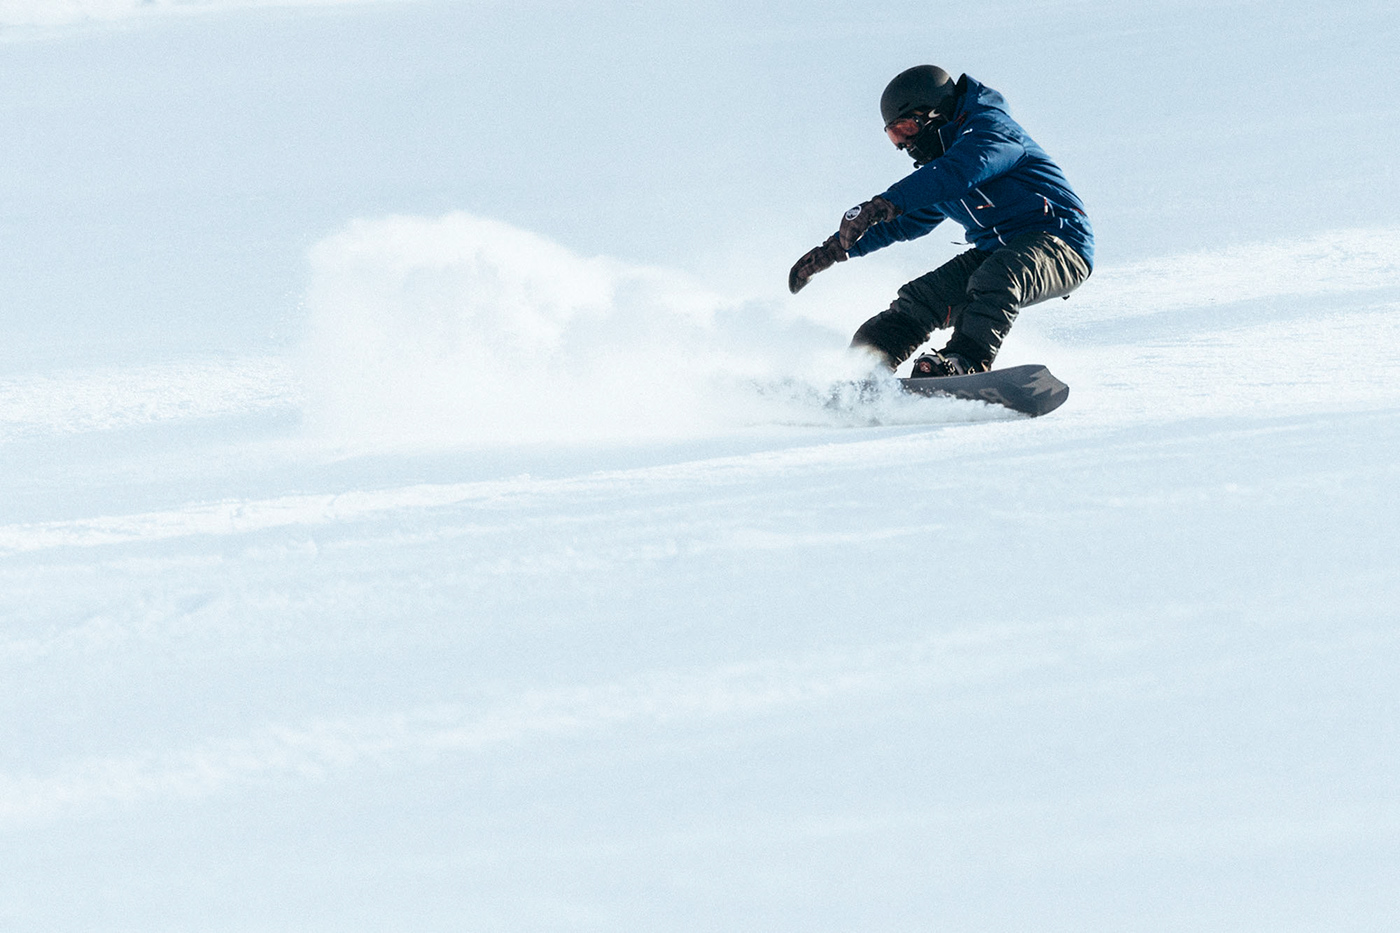 Ski Snowboarding sports snow winter White mountain